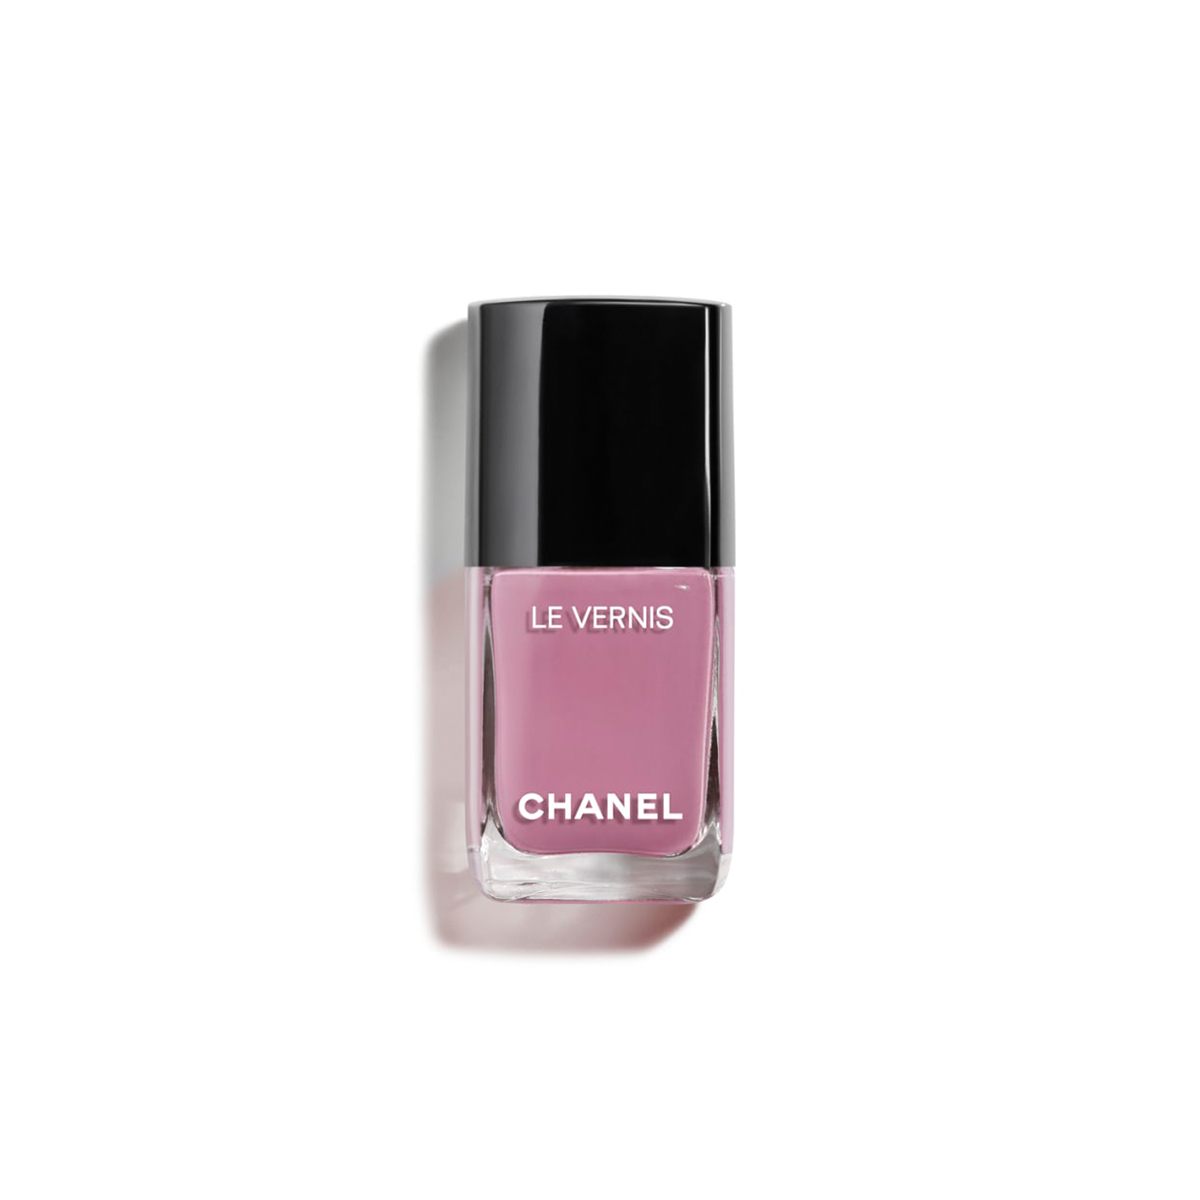 Chanel Le Vernis Langtøj søm farve i Mirage